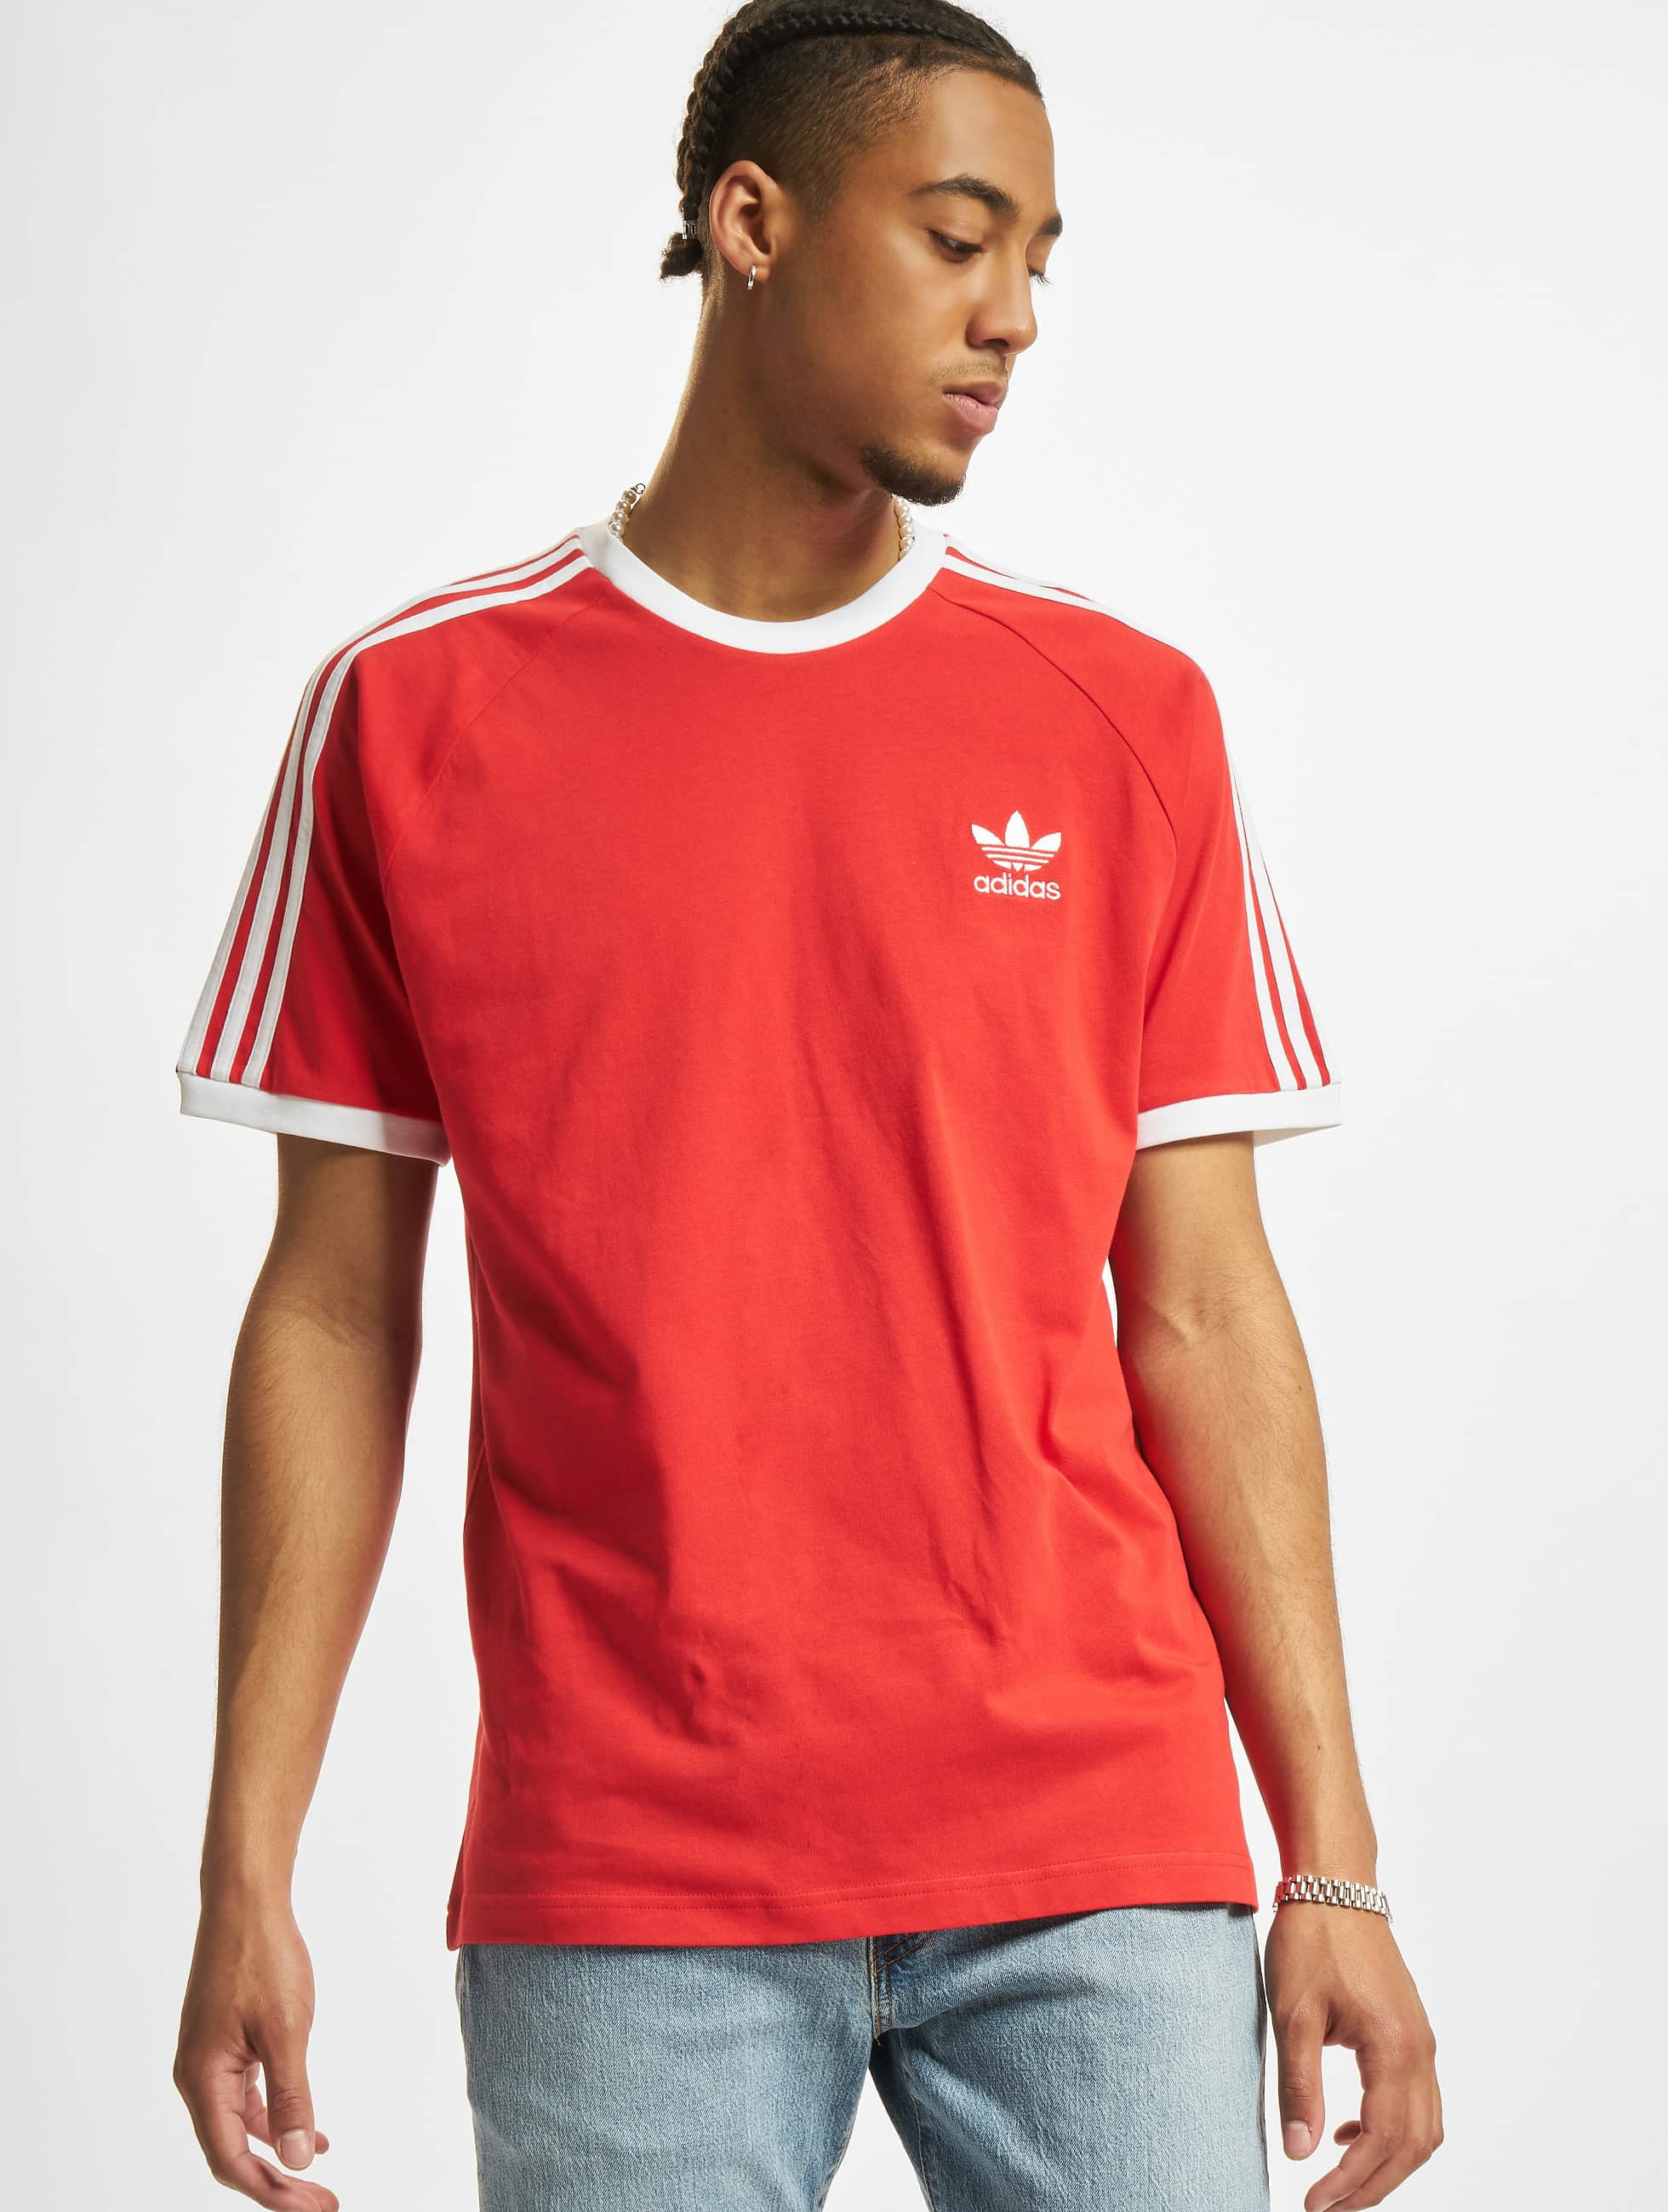 Prematuur Aandringen Inspecteur adidas Originals bovenstuk / t-shirt 3-Stripes in rood 871509